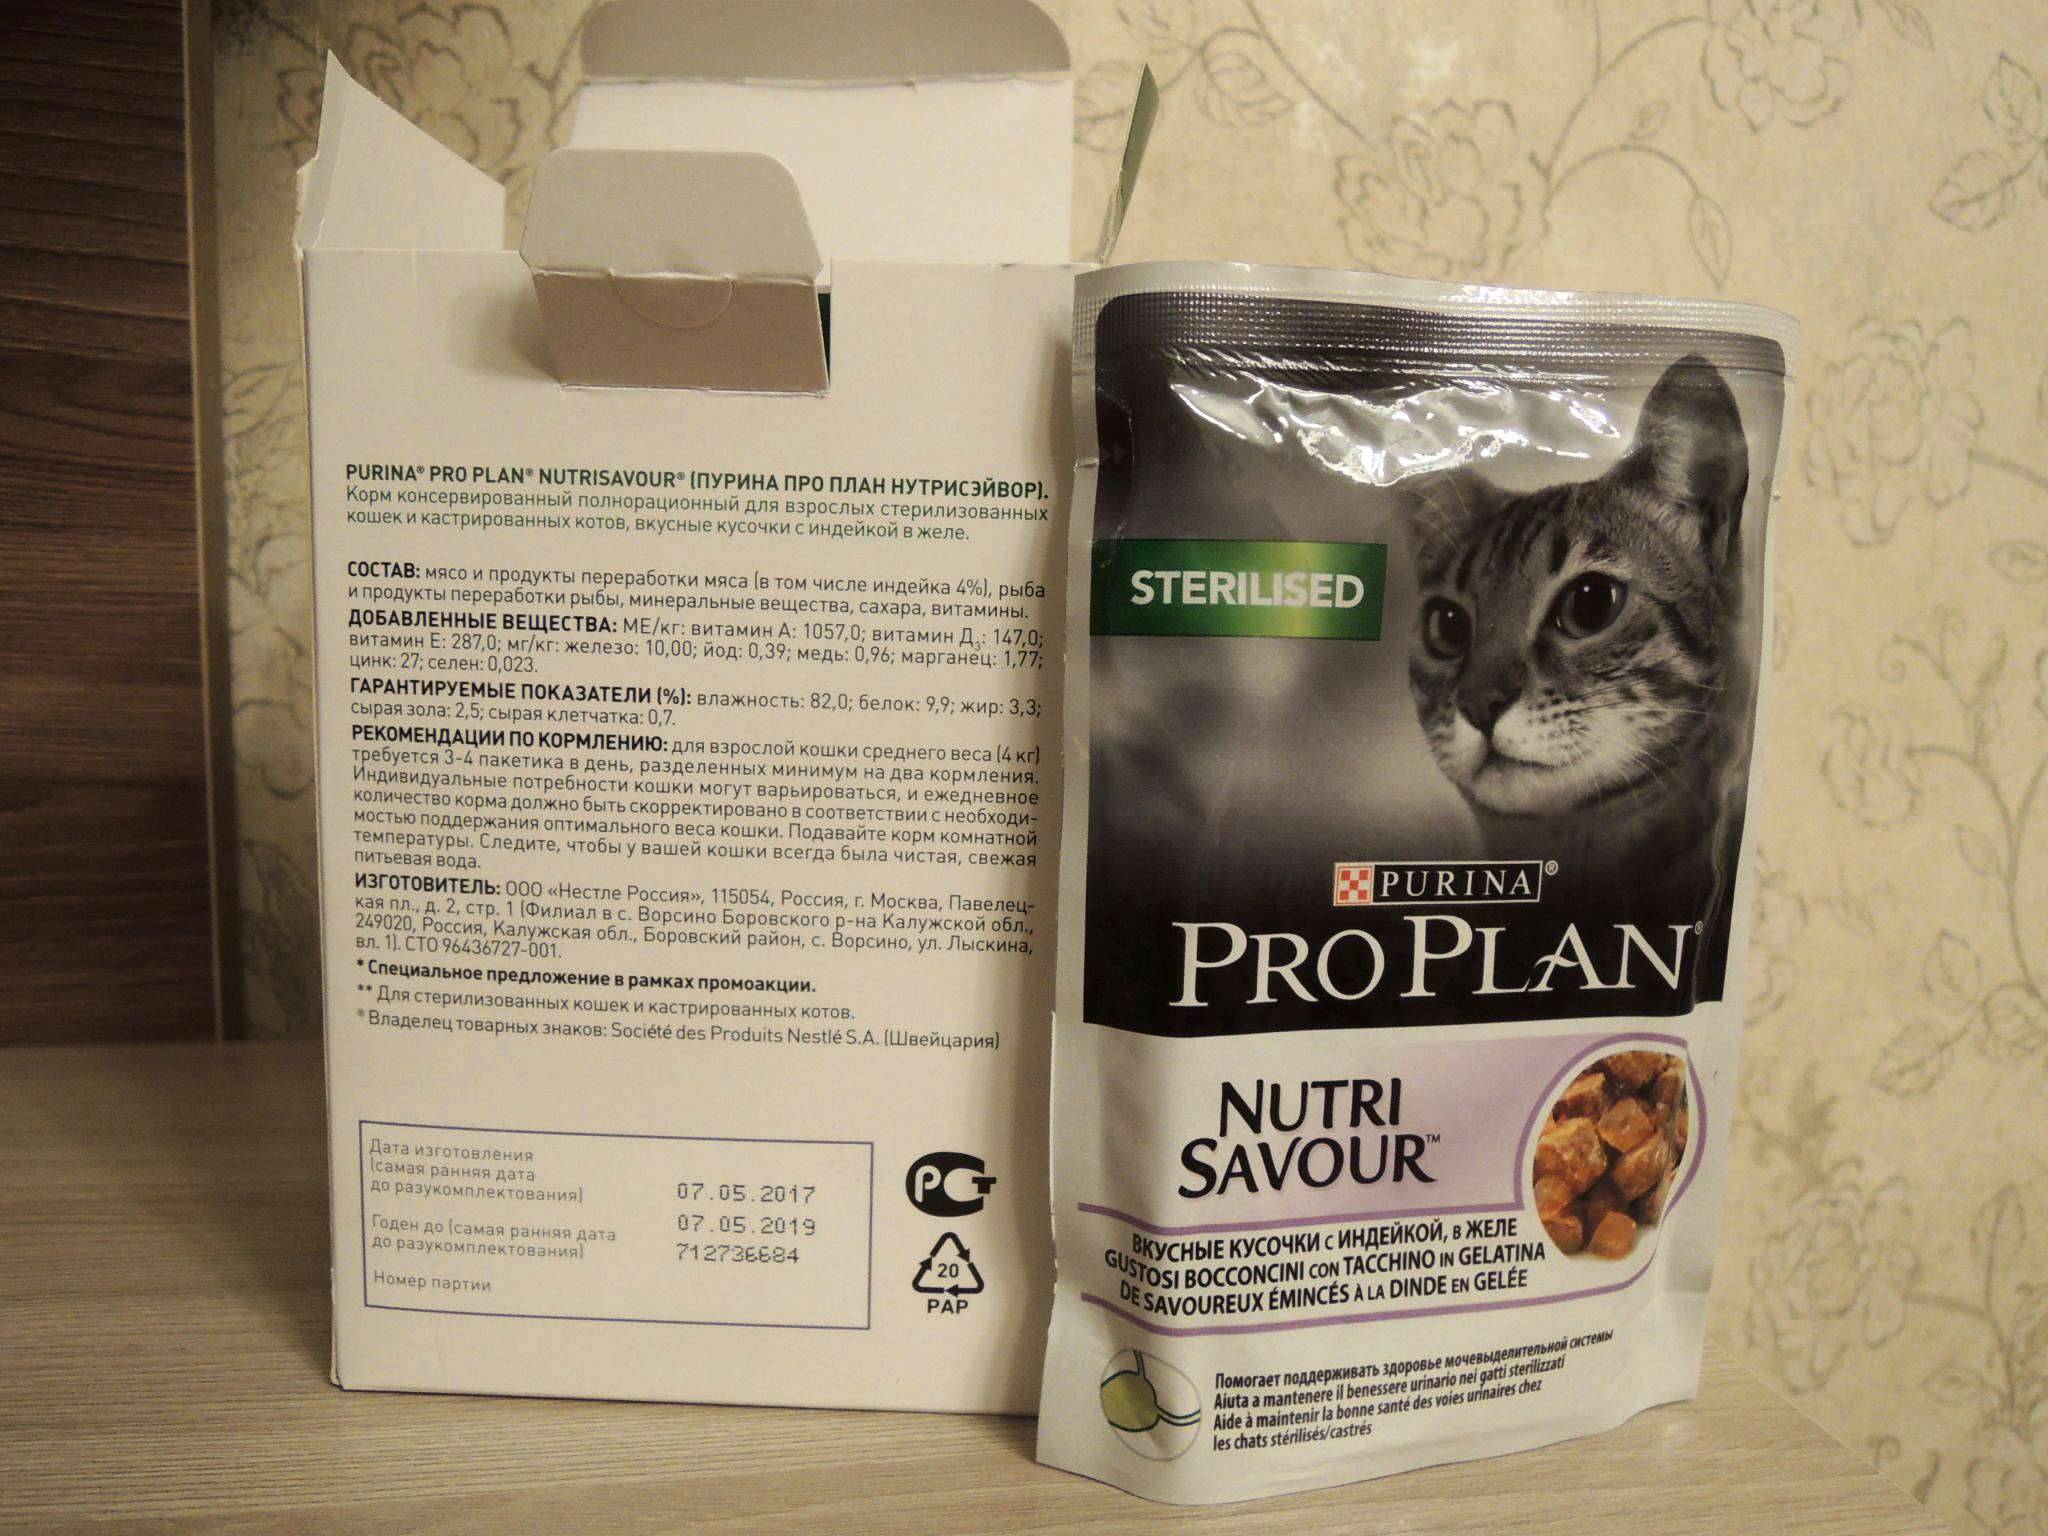 Можно ли кормить стерилизованную кошку обычным кормом? рейтинг кормов для стерилизованных кошек